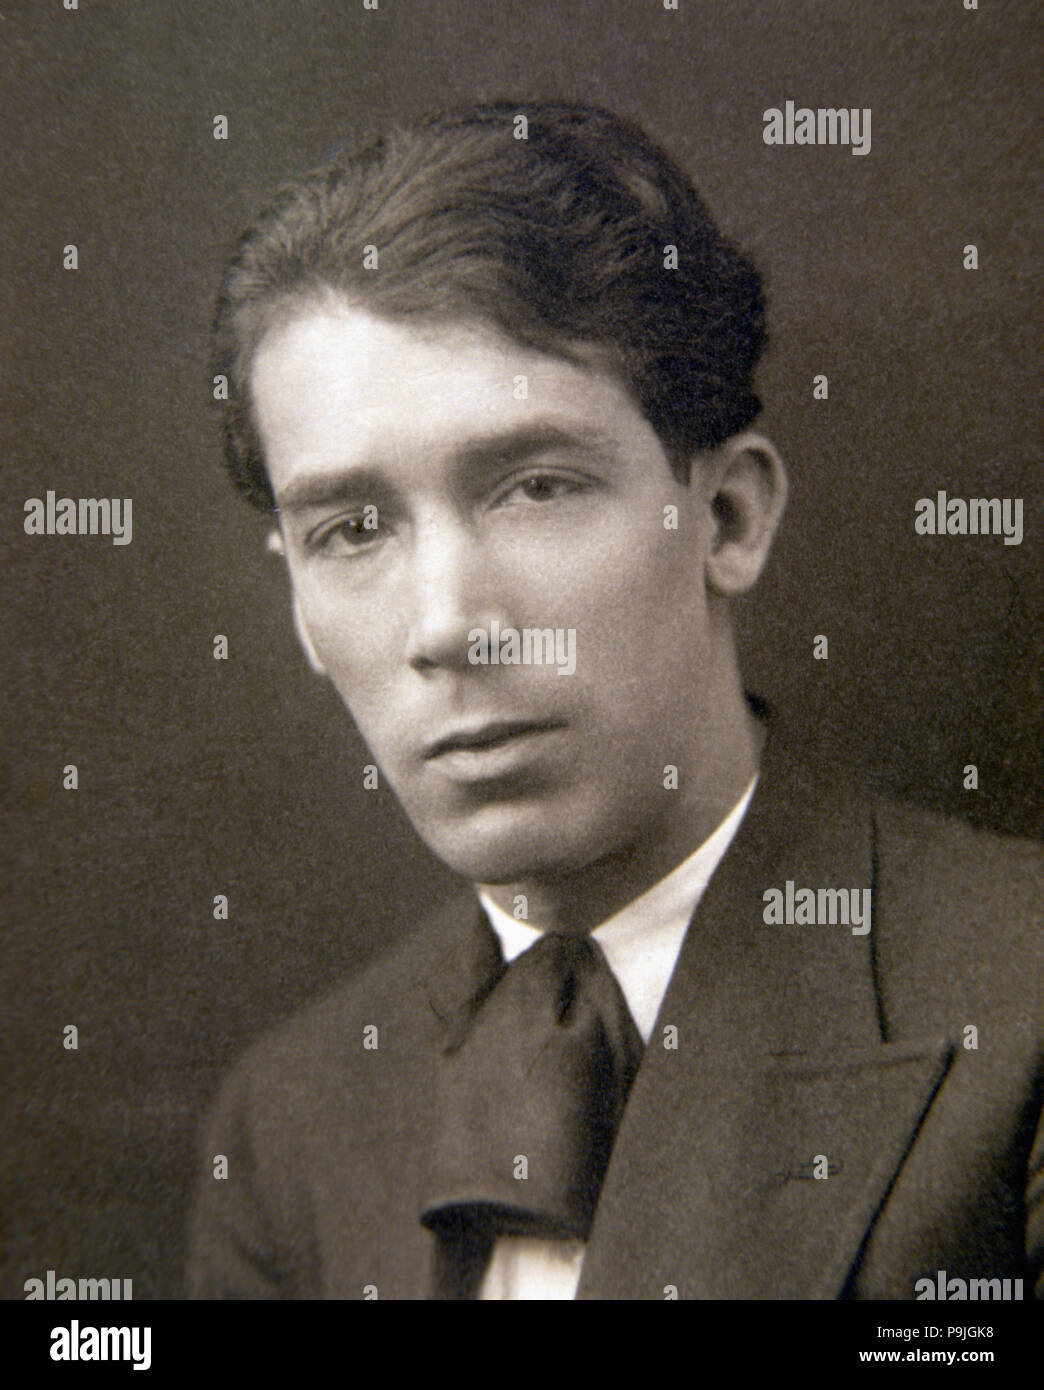 Alejandro Rodriguez  Casona, Alejandro Casona (1903-1965) Spanish playwright and poet. Stock Photo